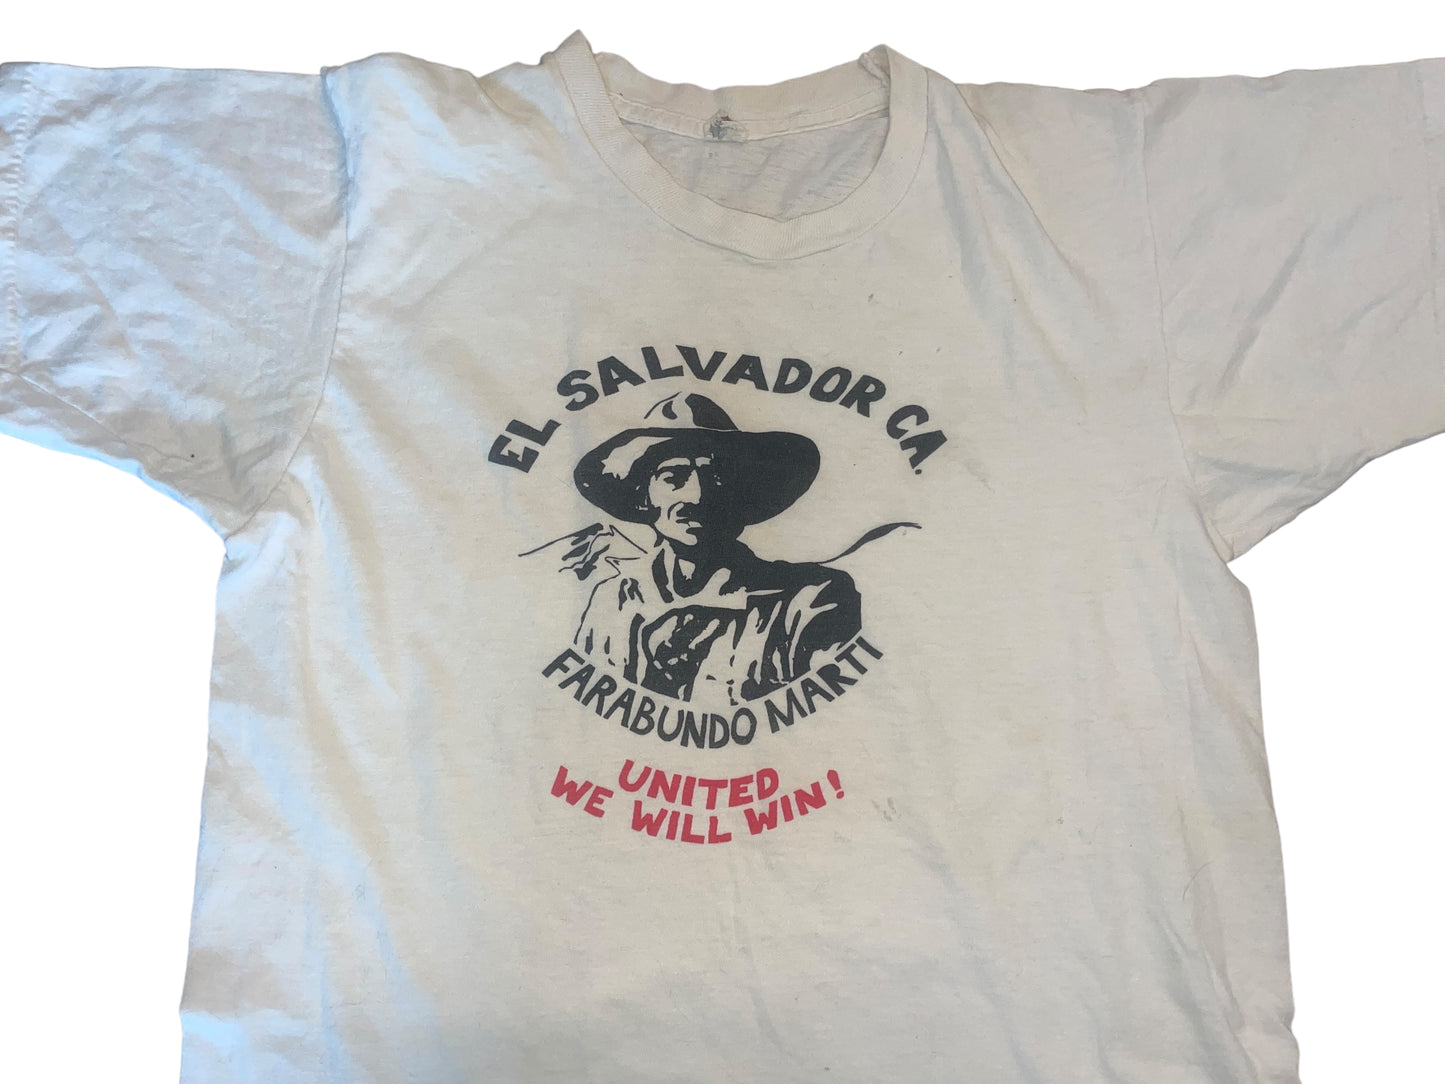 Vintage 70's Farabundo Marti T-Shirt